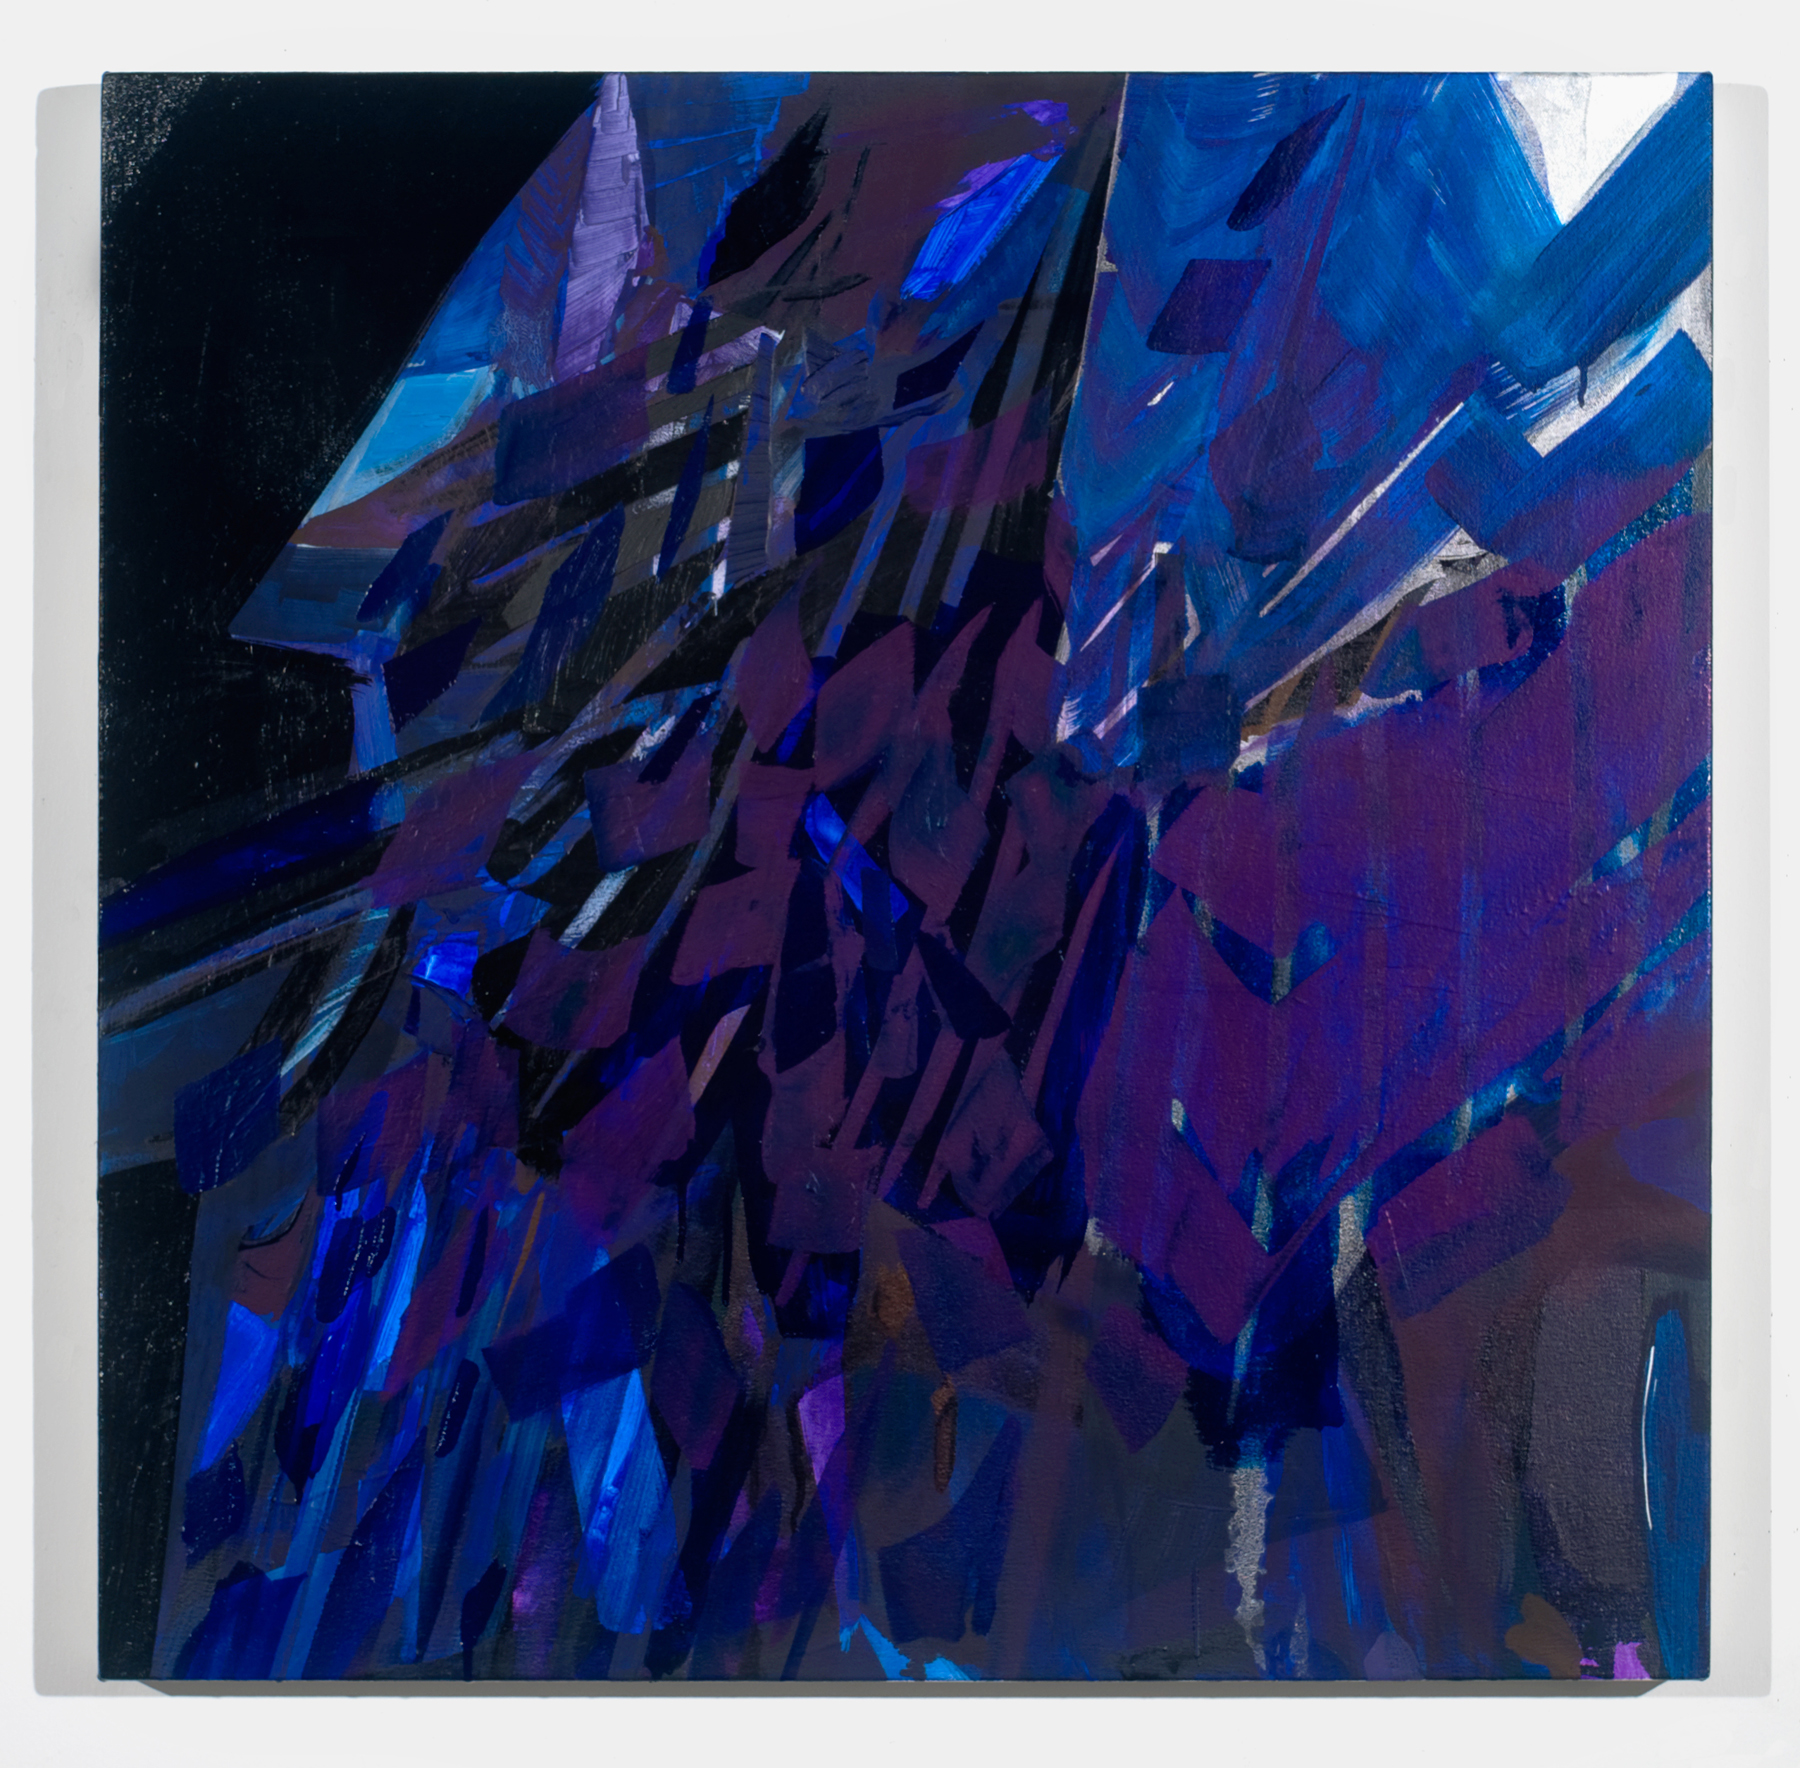   PAMELA JORDEN   Fragments of blue dense,&nbsp; oil on canvas, 33" x 33", 2011 